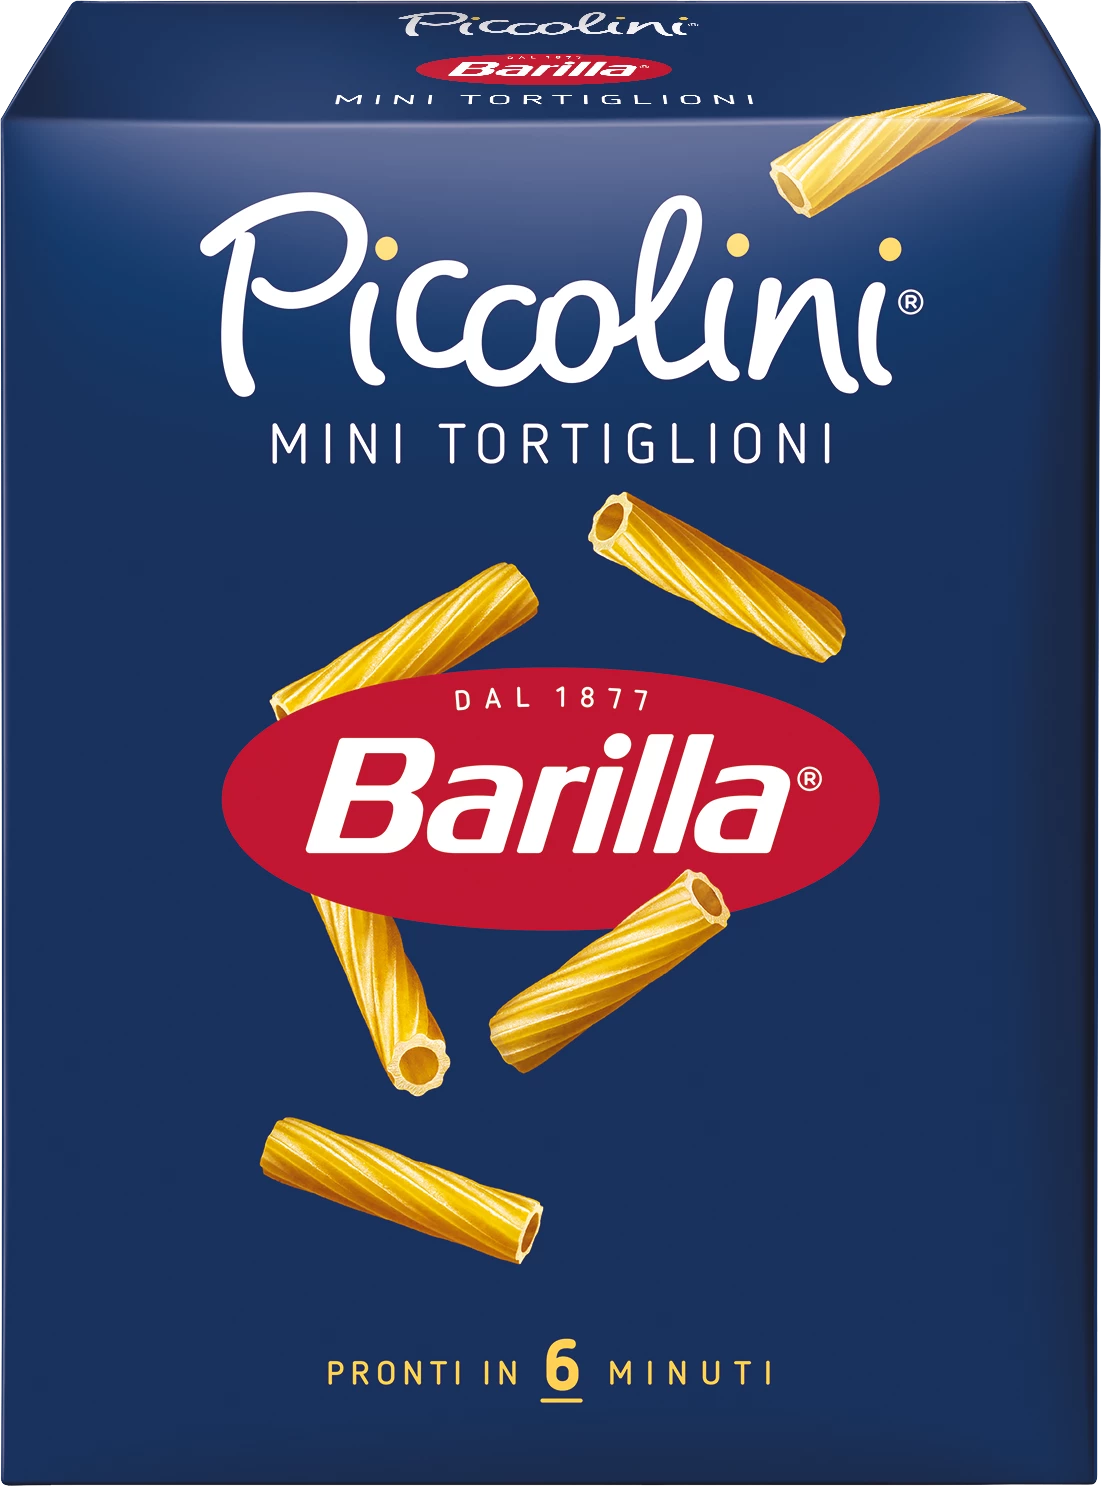 मिनी टोर्टिग्लियोनी पास्ता, 500 ग्राम - BARRILa